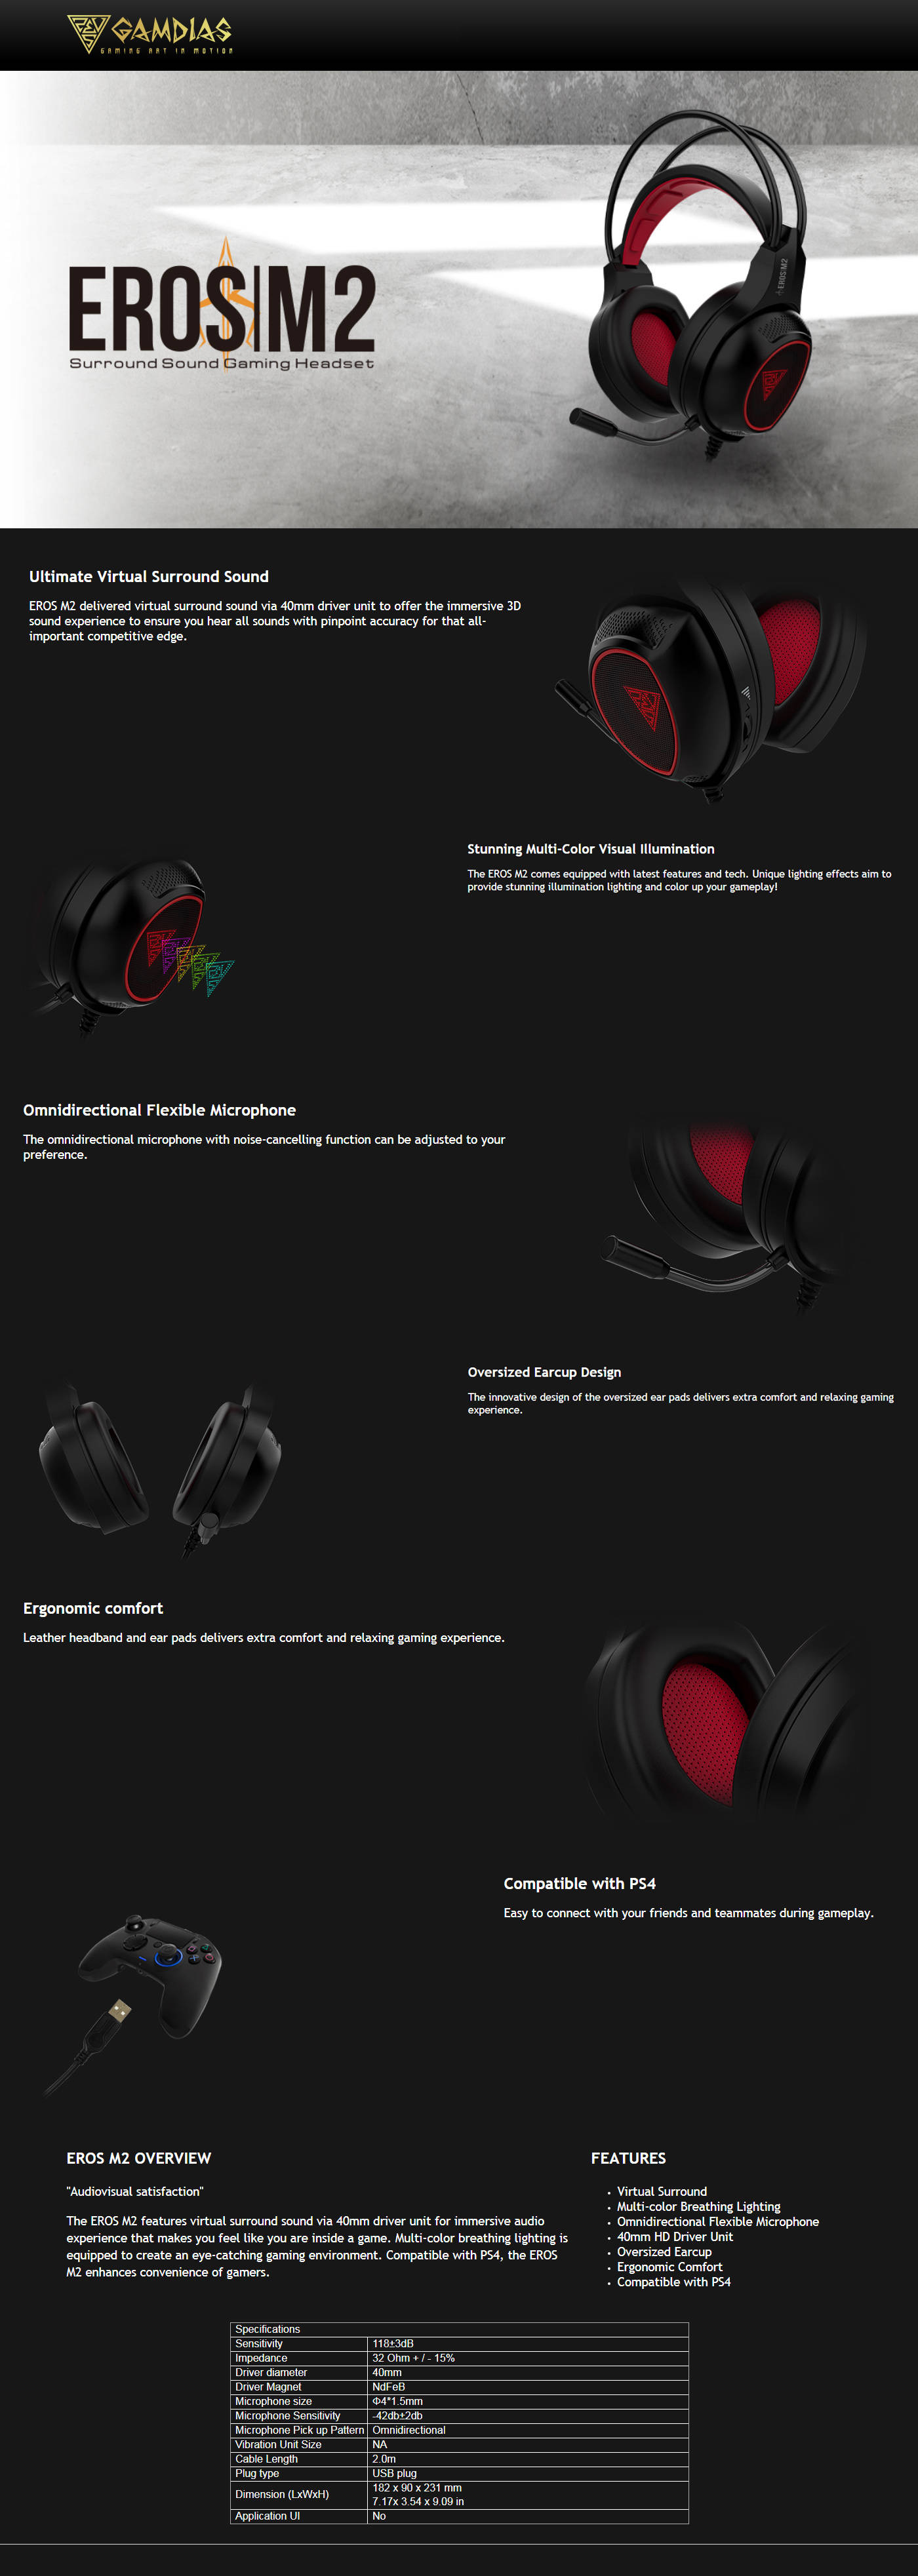 Buy Online Gamdias Eros M2 Surround Sound Gaming Headset with Mic - Black